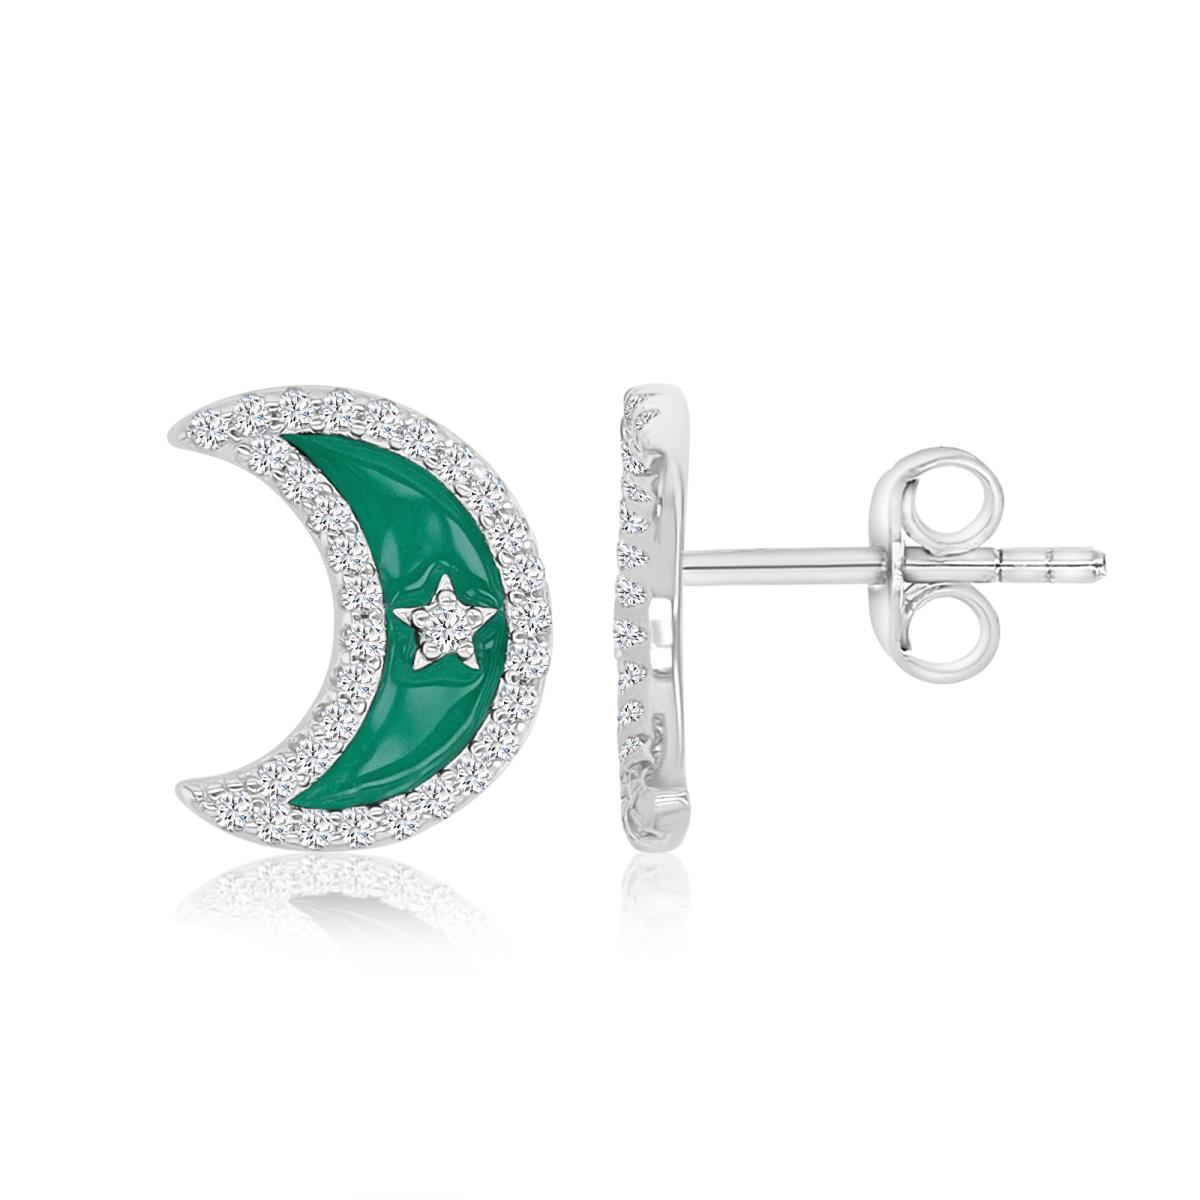 Sterling Silver Rhodium 9.7X12MM White CZ & Green Enamel Half Moon Stud Earrings